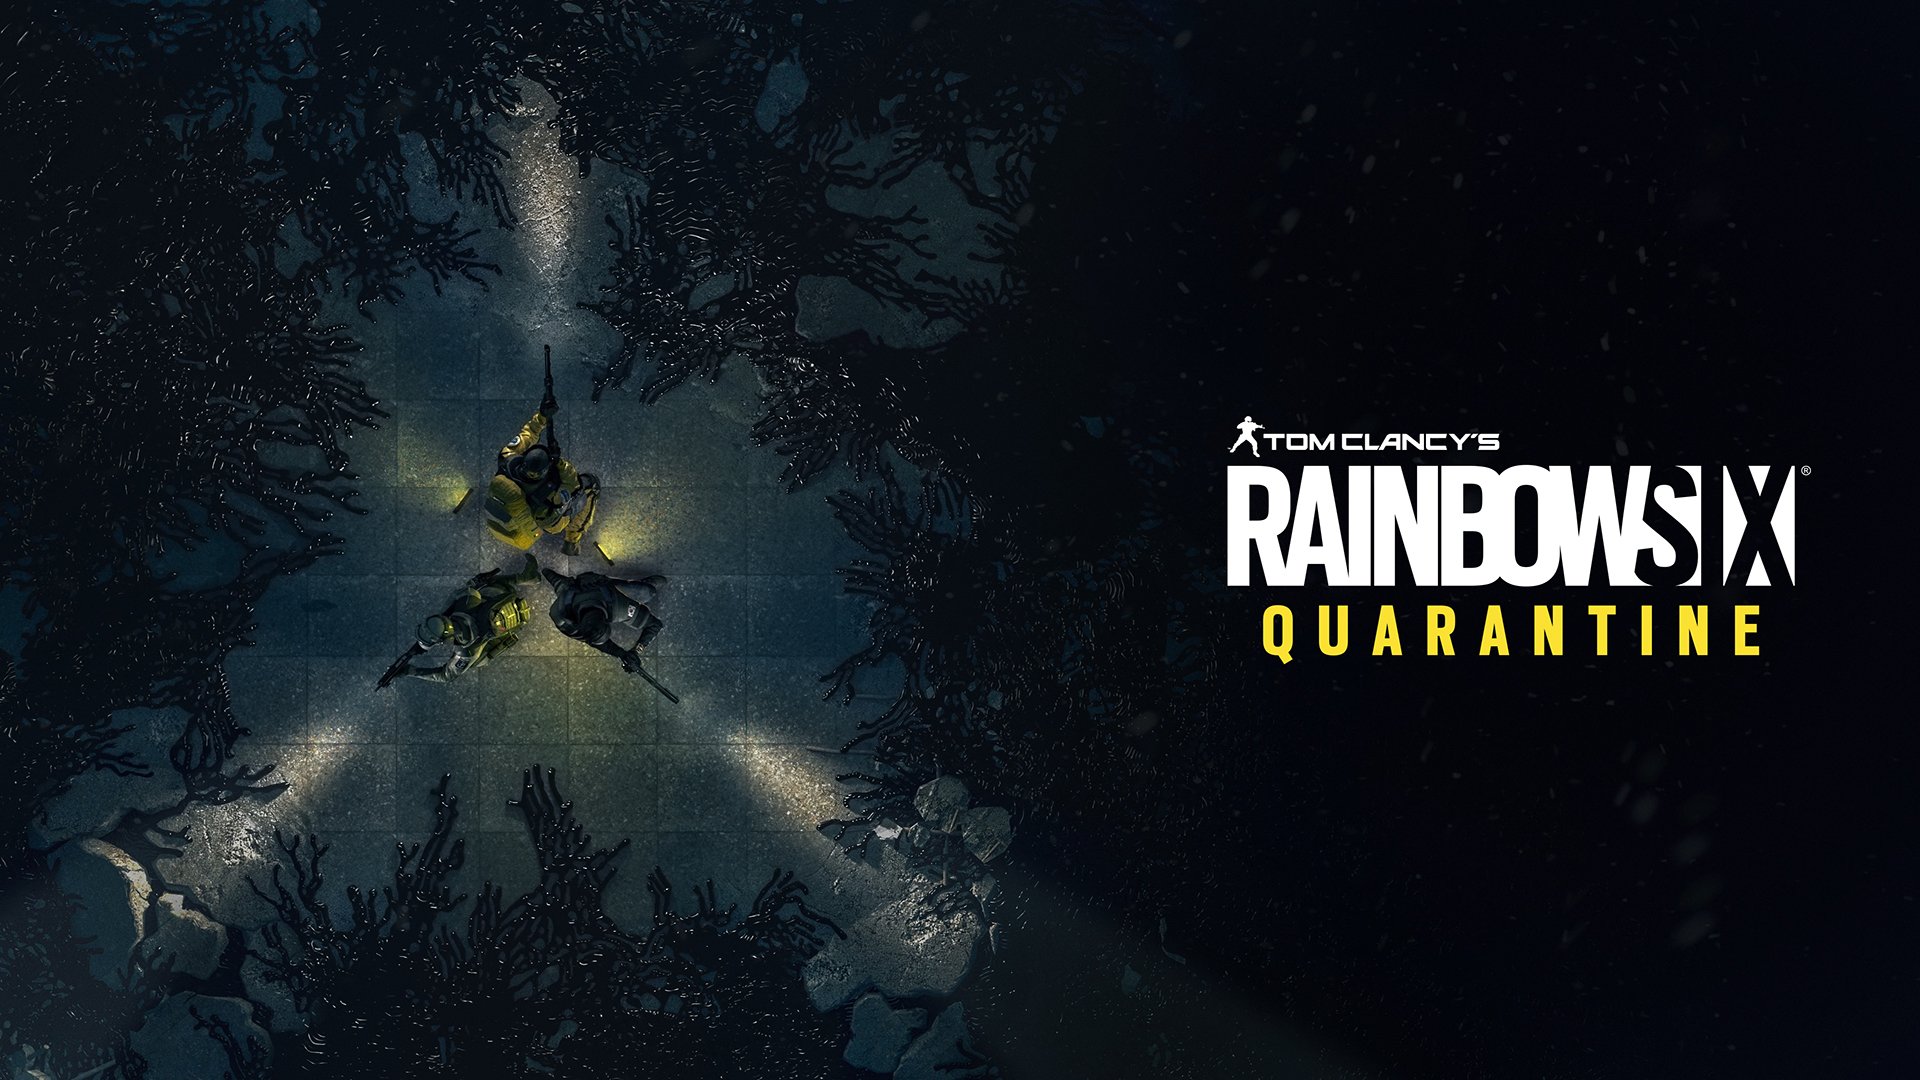 A Ubisoft confirmou que Rainbow Six Quarantine vai chegar em 2021, no entanto o jogo pode mudar de nome devido à pandemia do Coronavírus.